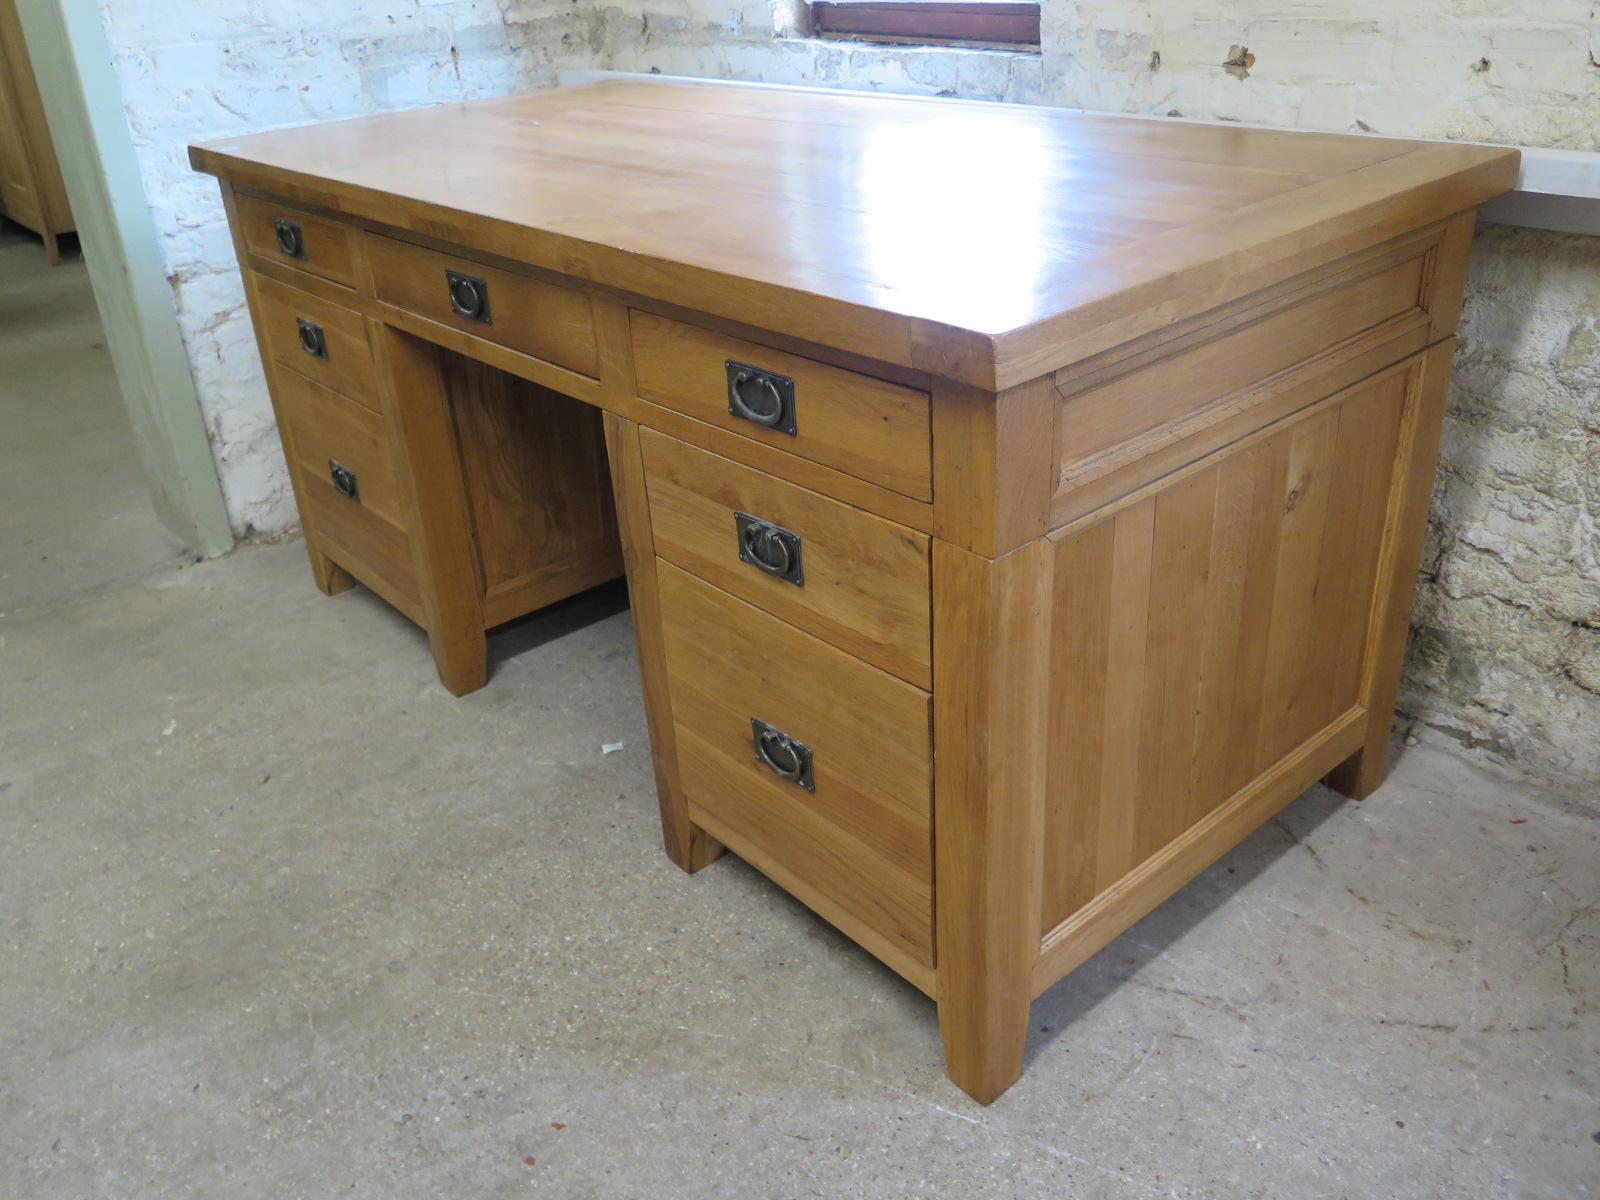 An oak twin pedestal desk with an arrangement of seven drawers - Height 84cm x 180cm x 86cm